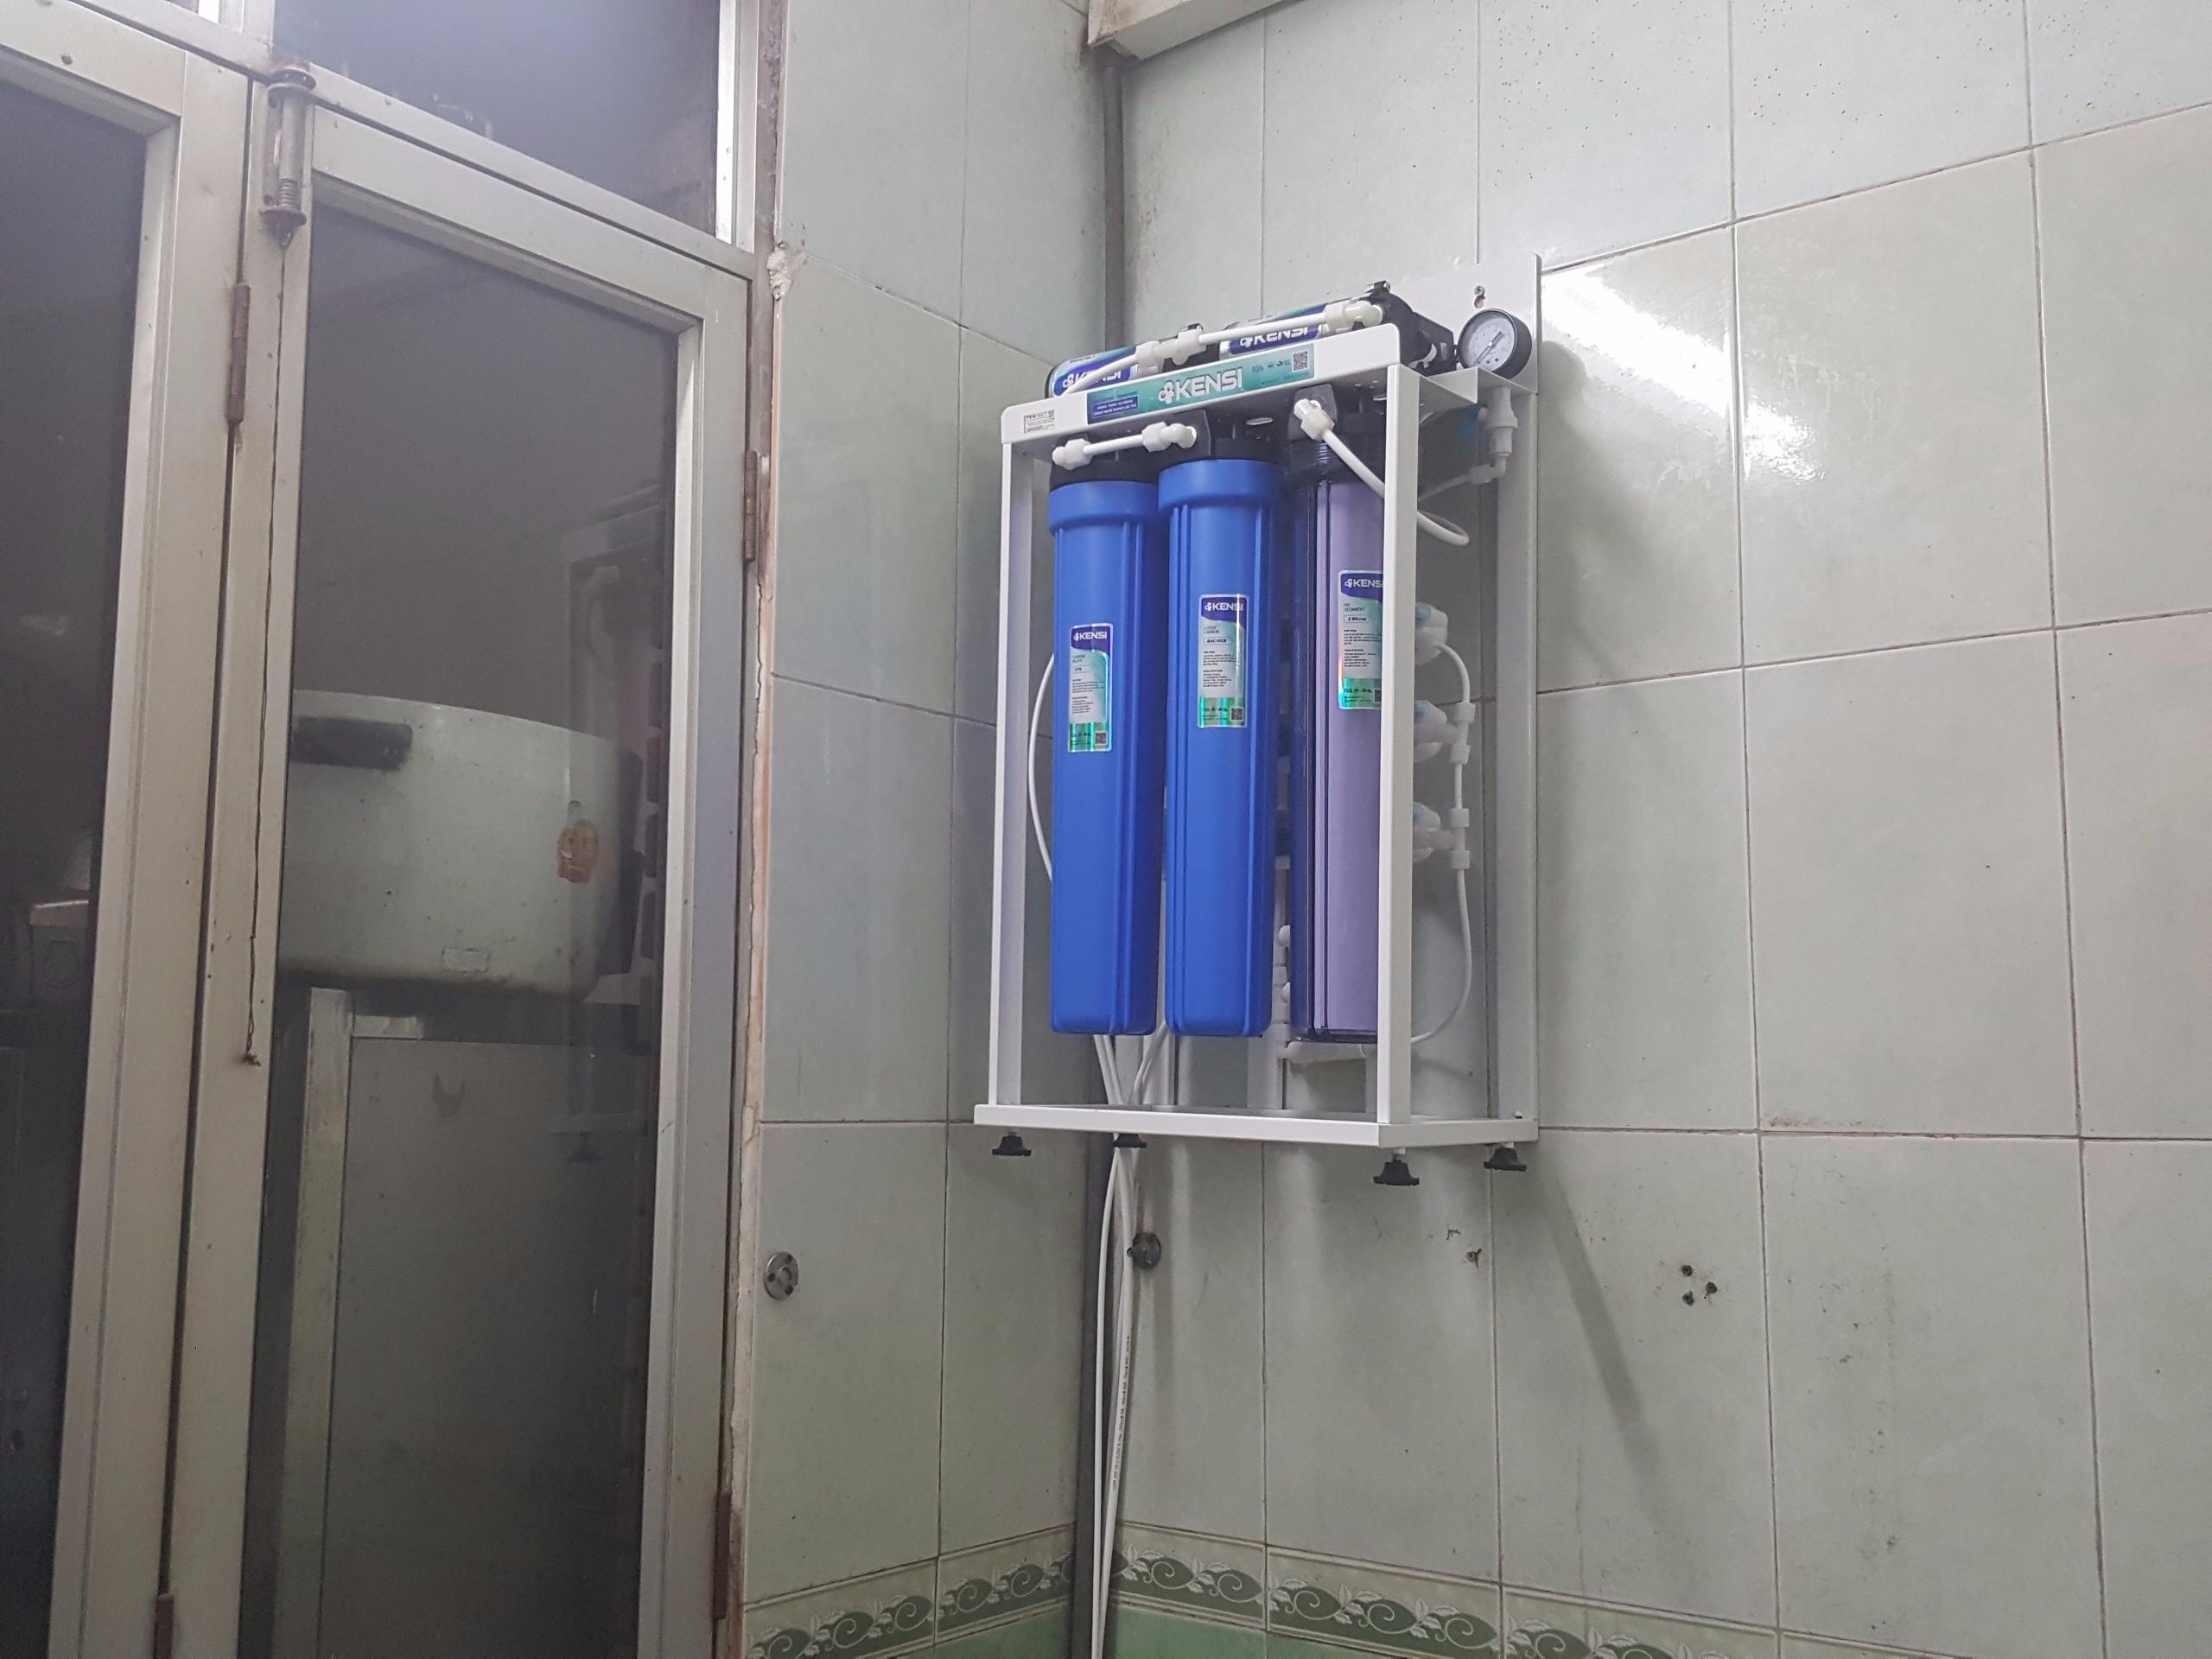 hệ thống lọc nước bán công ngiệp lắp đặt tại nhà ăn của công an